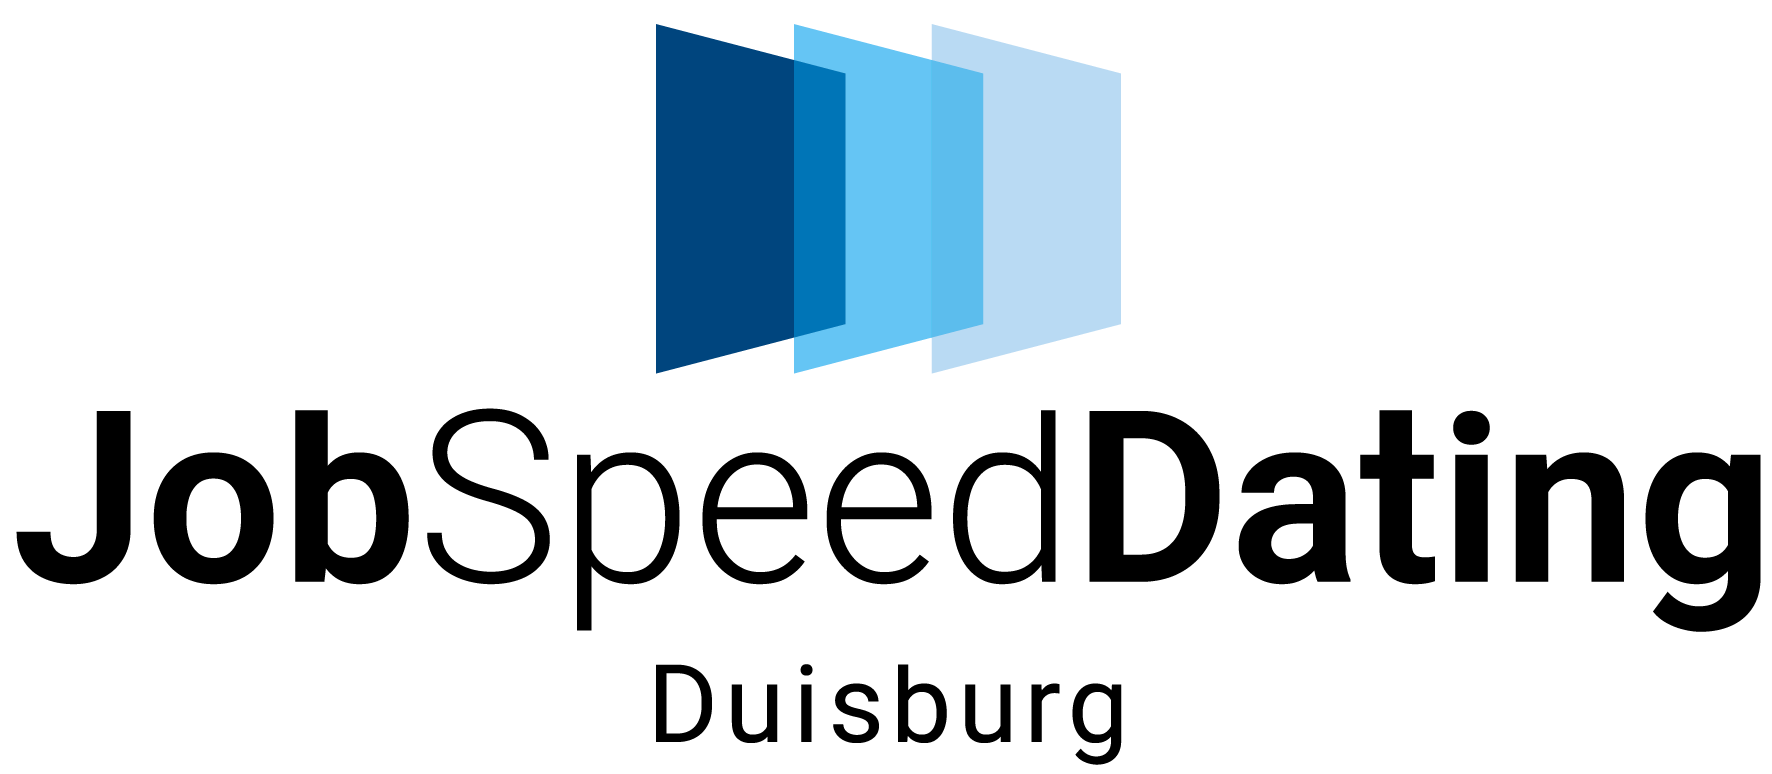 jsd-duisburg-logo-final2807-.png